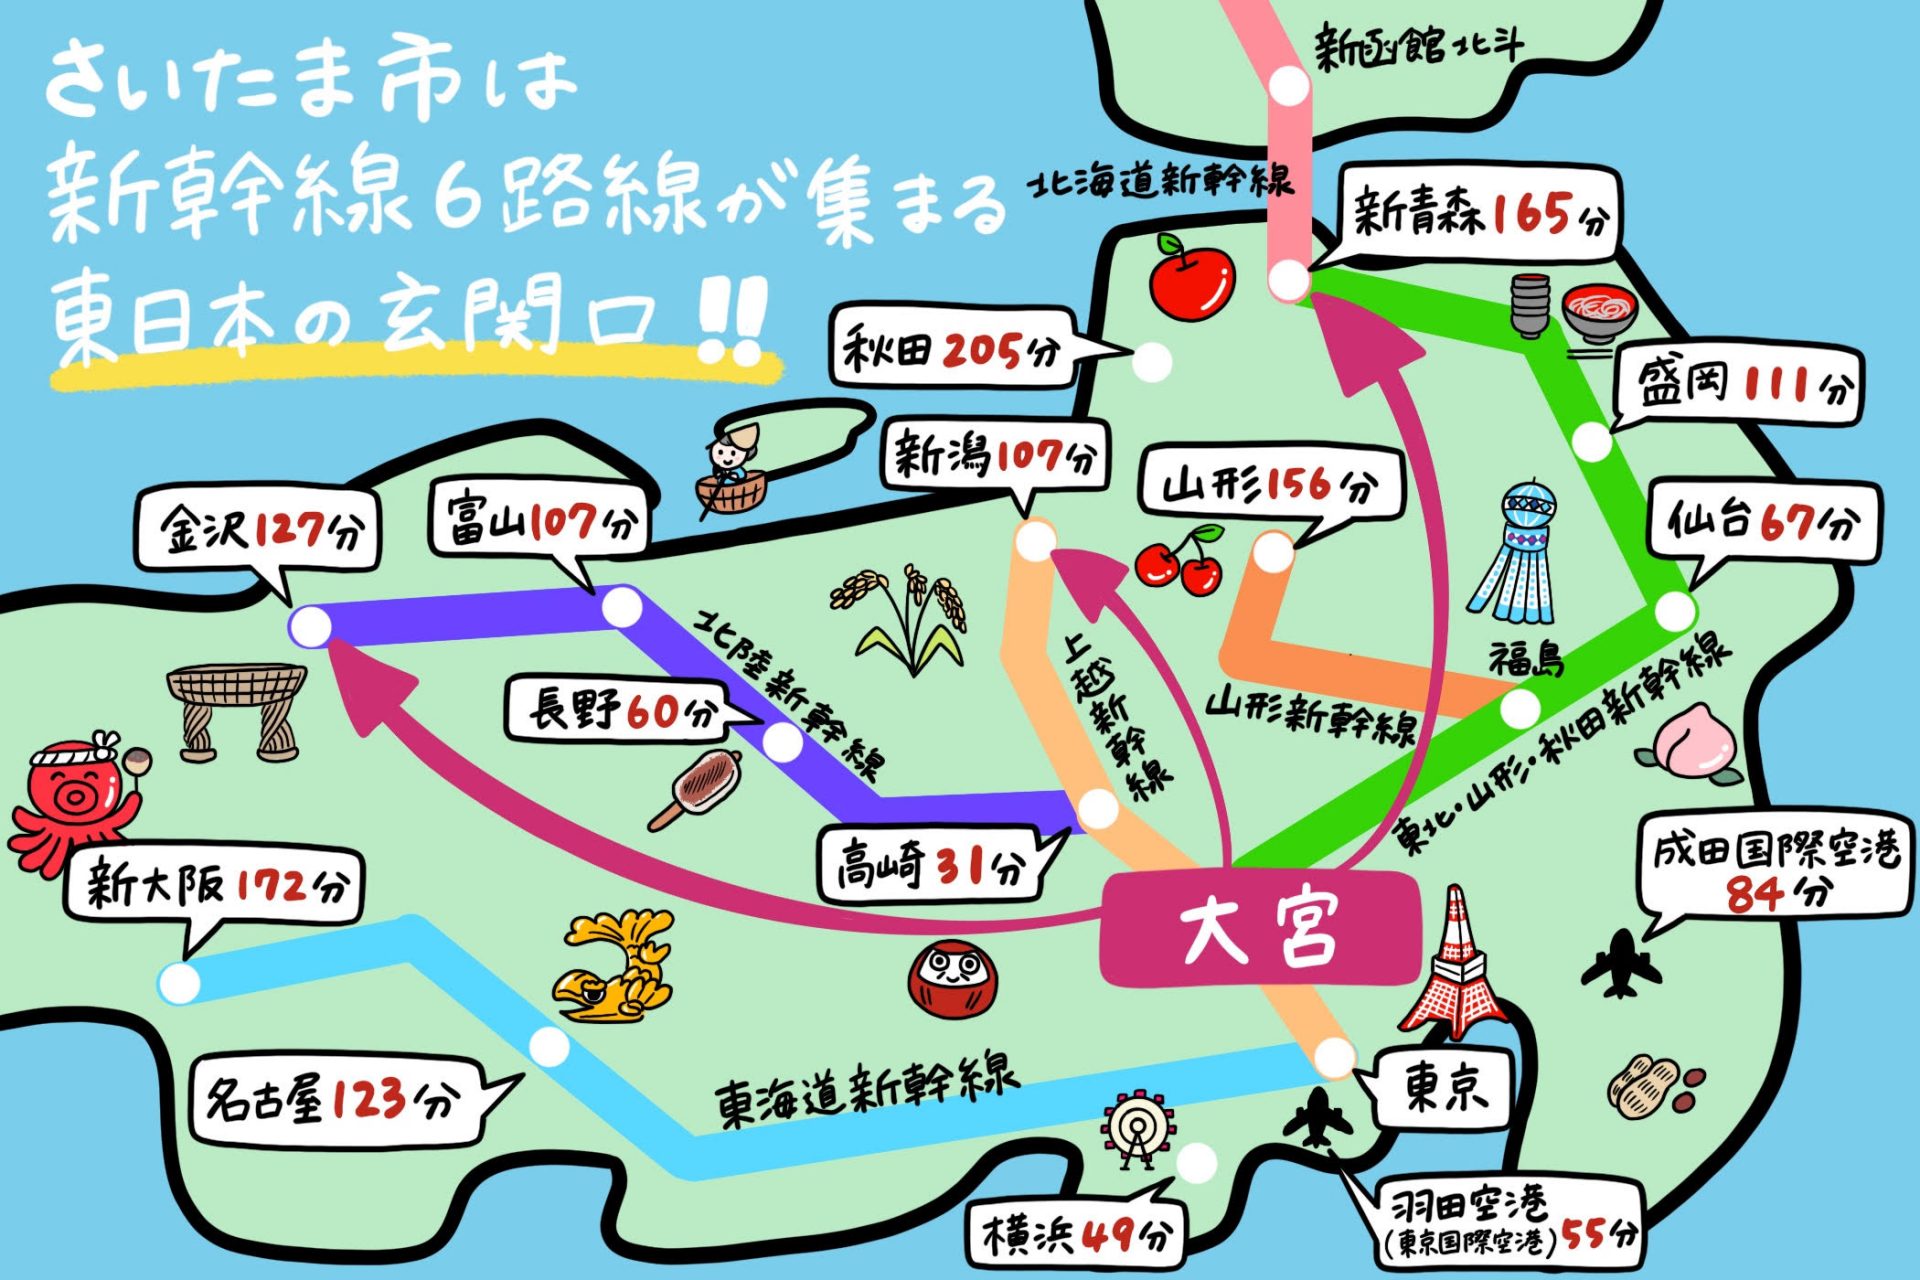 さいたま市から地方へのアクセス_新幹線6路線が通っていて、気軽に帰省・国内旅行が可能